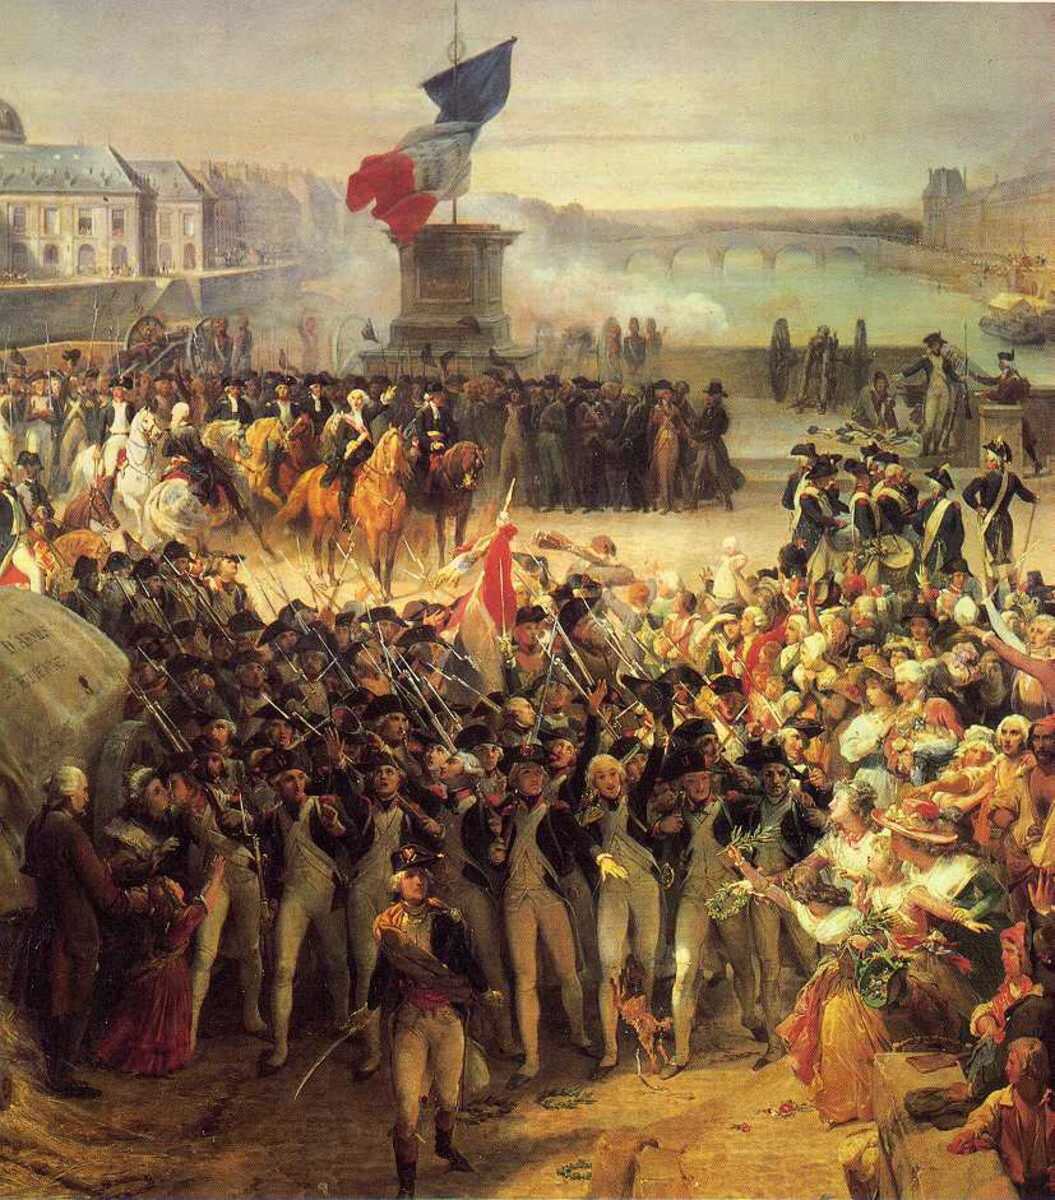 Великая французская революция конца 18 века. Великая французская революция 1789. Революция в Франции 1789-1794. Революция во Франции 1789. Французская революция взятие Бастилии 1789.